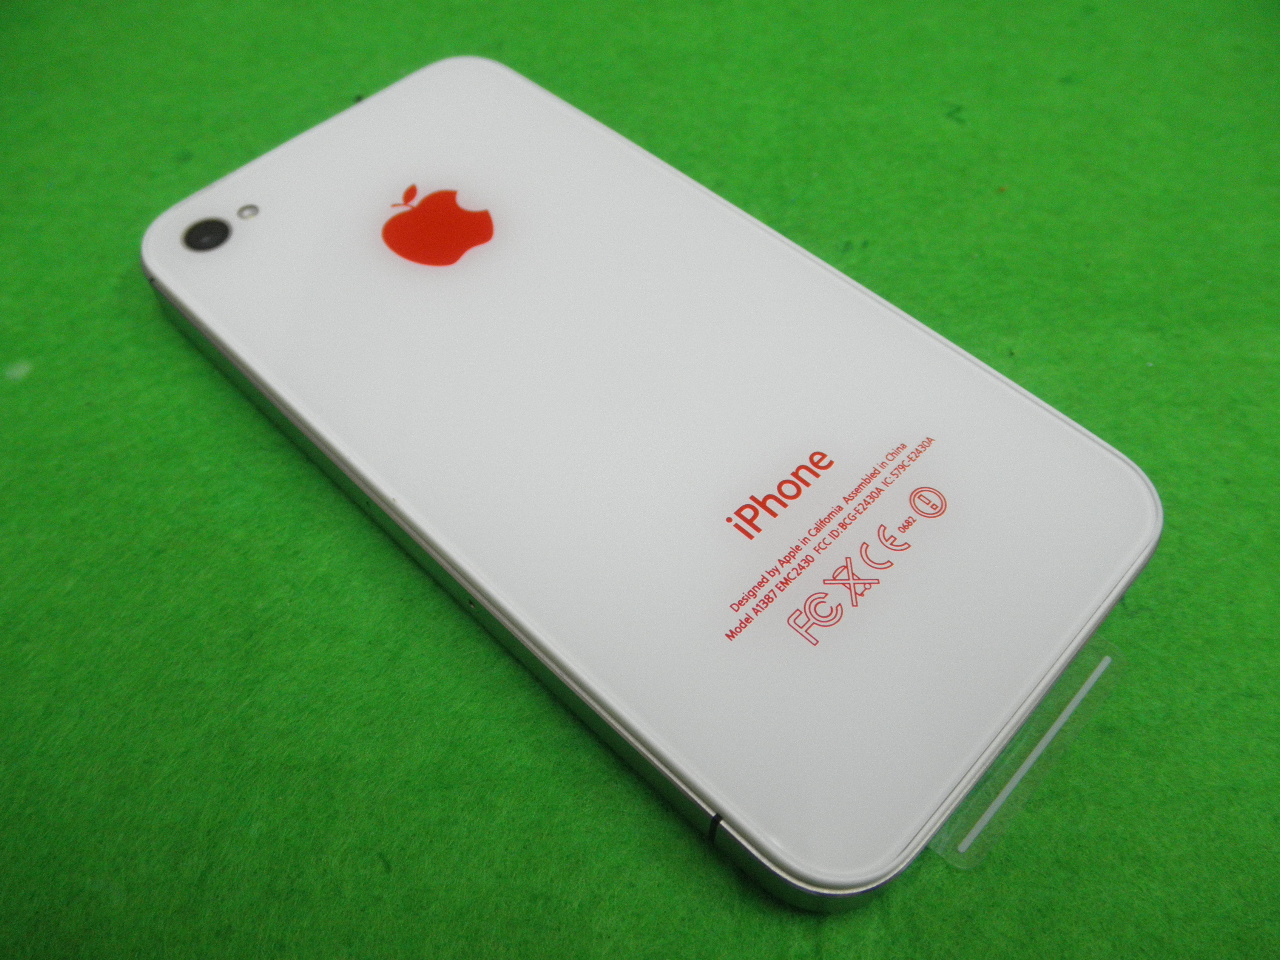 Iphoneの修理 Softbank取扱店 即日 修理致します Doctor Iphone Fukuoka Iphone4s バックパネルカスタム 女性に大人気のホワイトに赤リンゴに交換